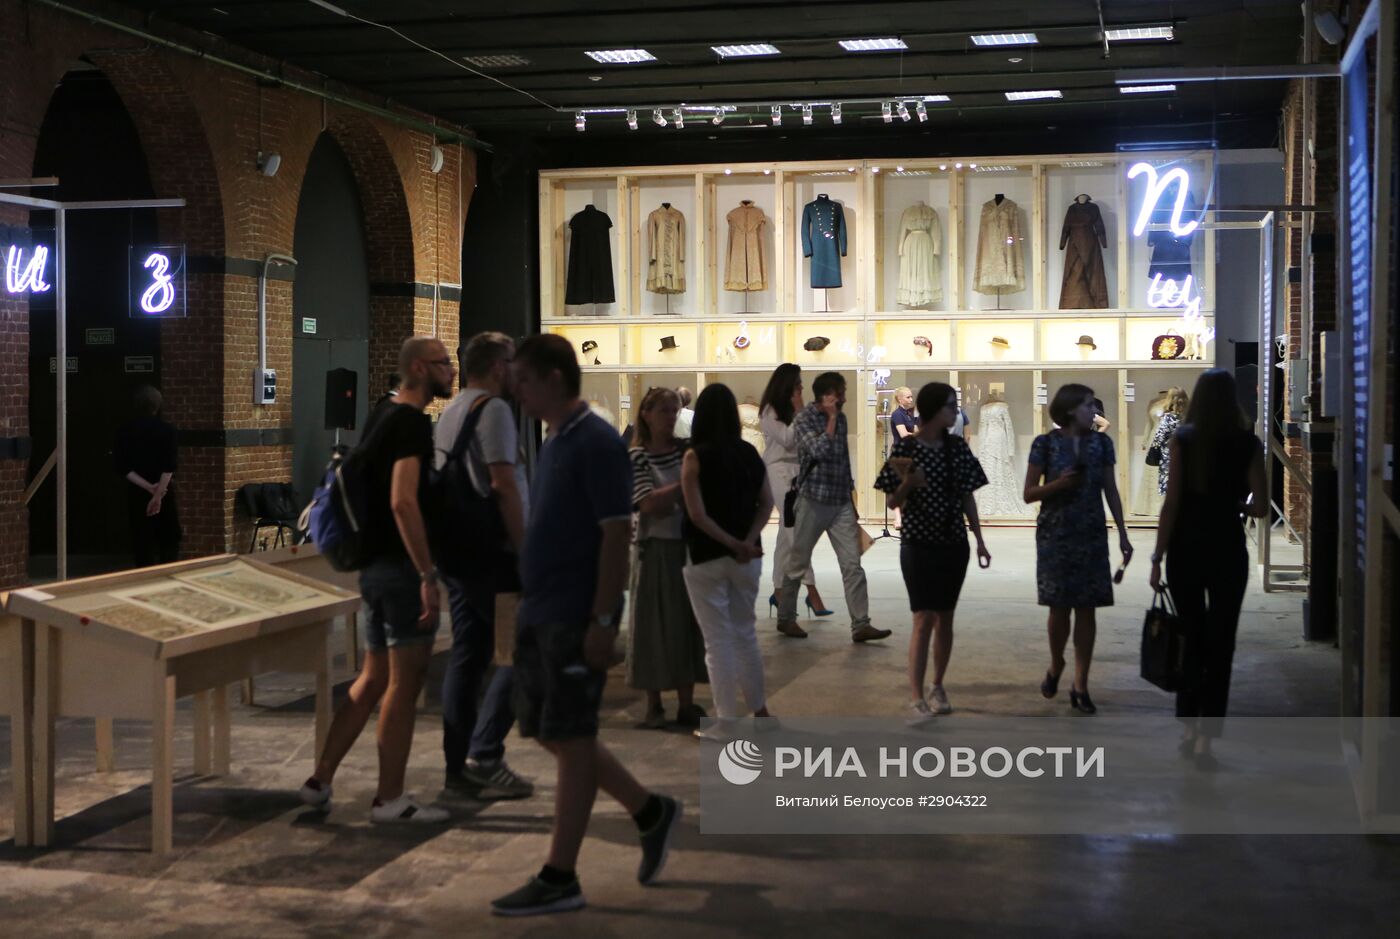 Открытие выставки "Азбука музея"